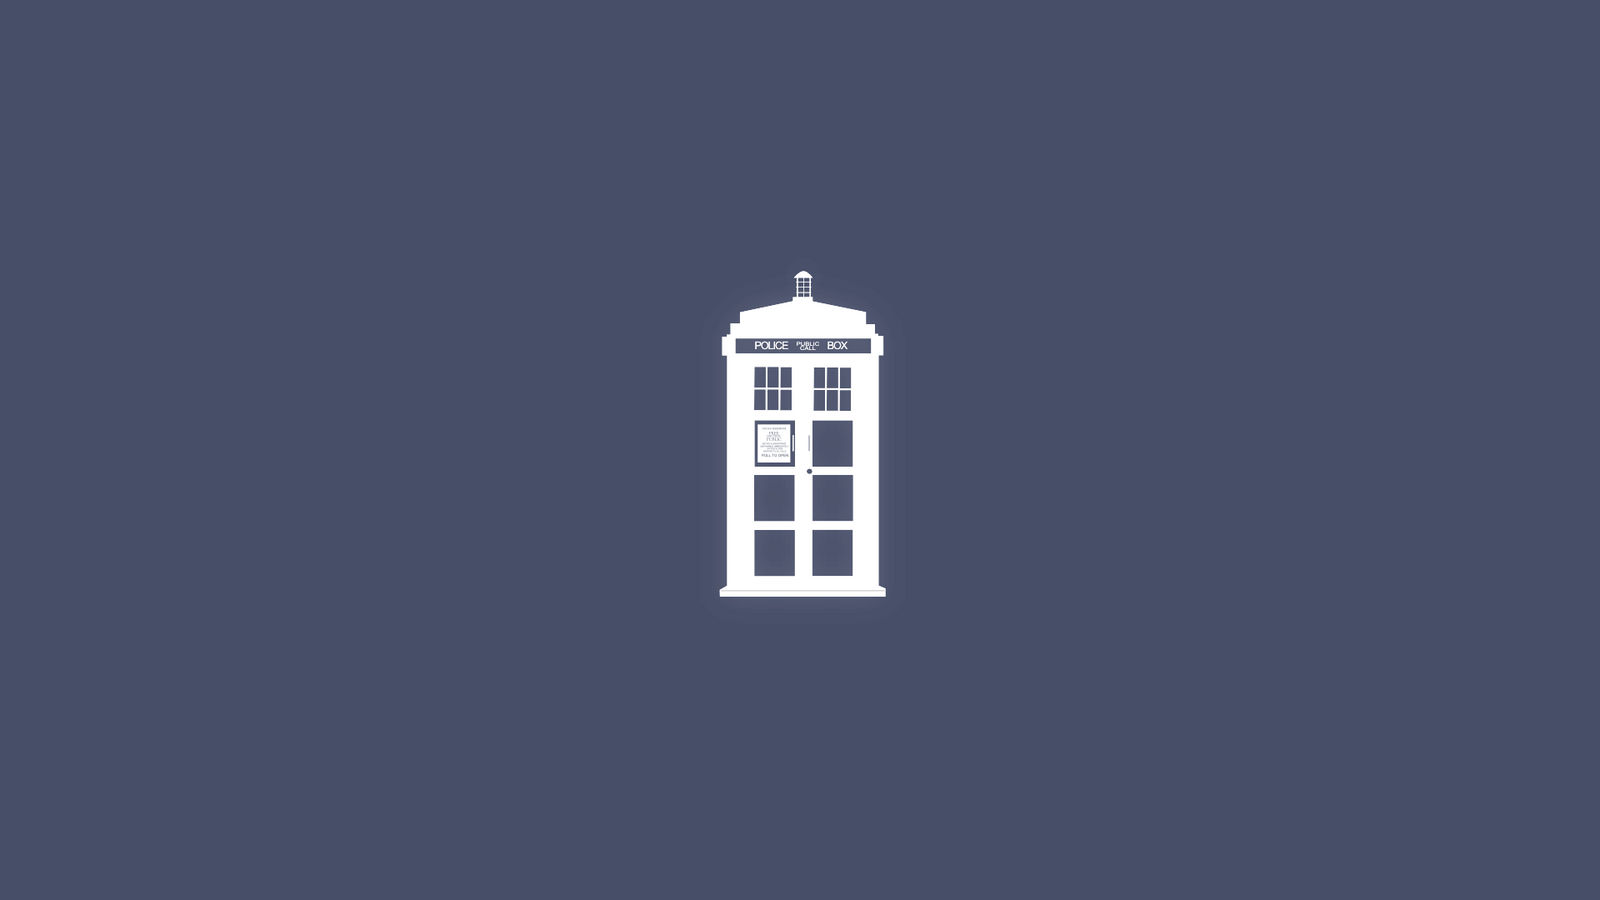 Doctor Who - Tardis Wallpaper (Full-HD) by SomeoneNameless on DeviantArt